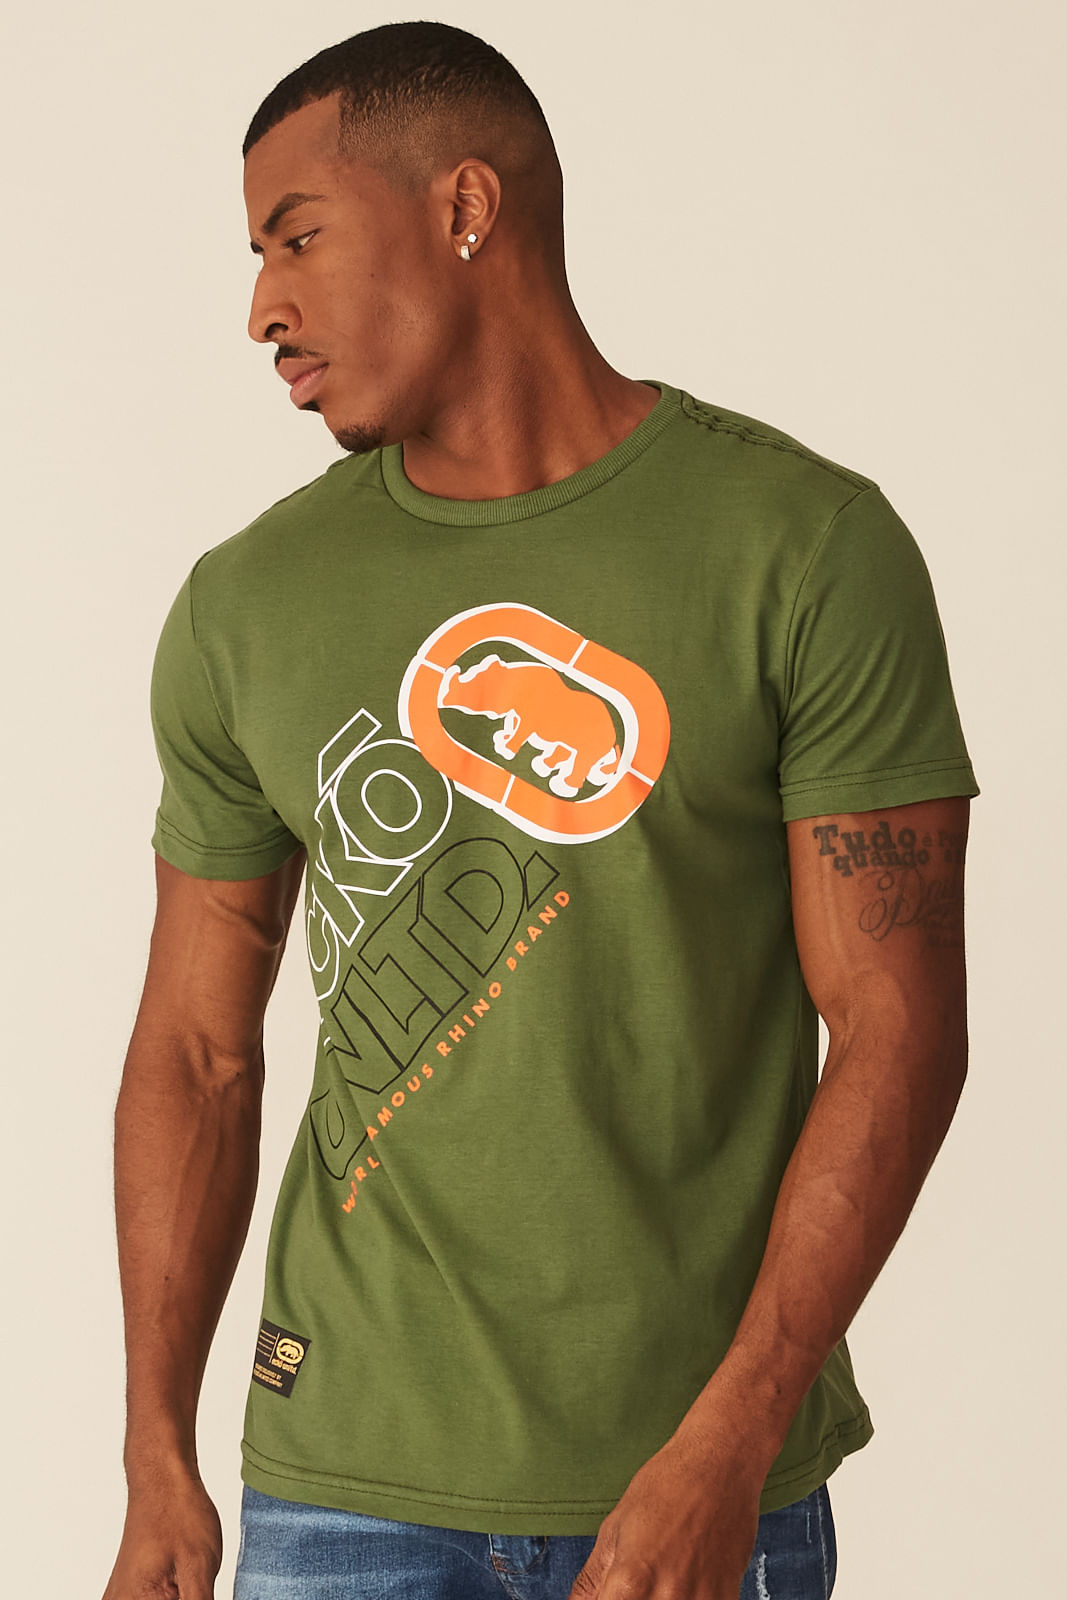 Camiseta Ecko Estampada Verde Militar